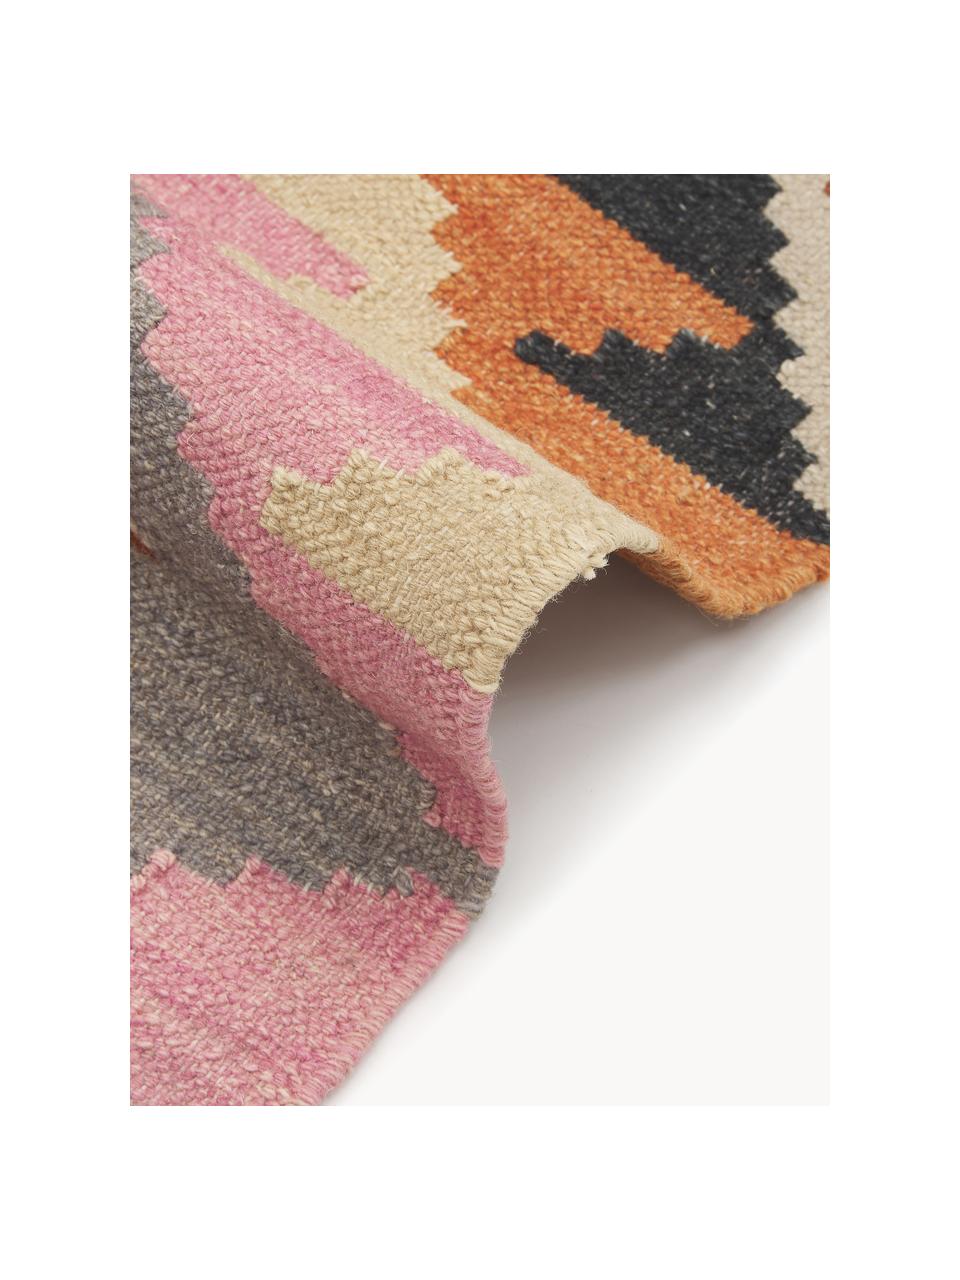 Tappeto kilim in lana tessuto a mano Zenda, 100% lana, Multicolore, Larg. 120 x Lung. 180 cm (taglia S)